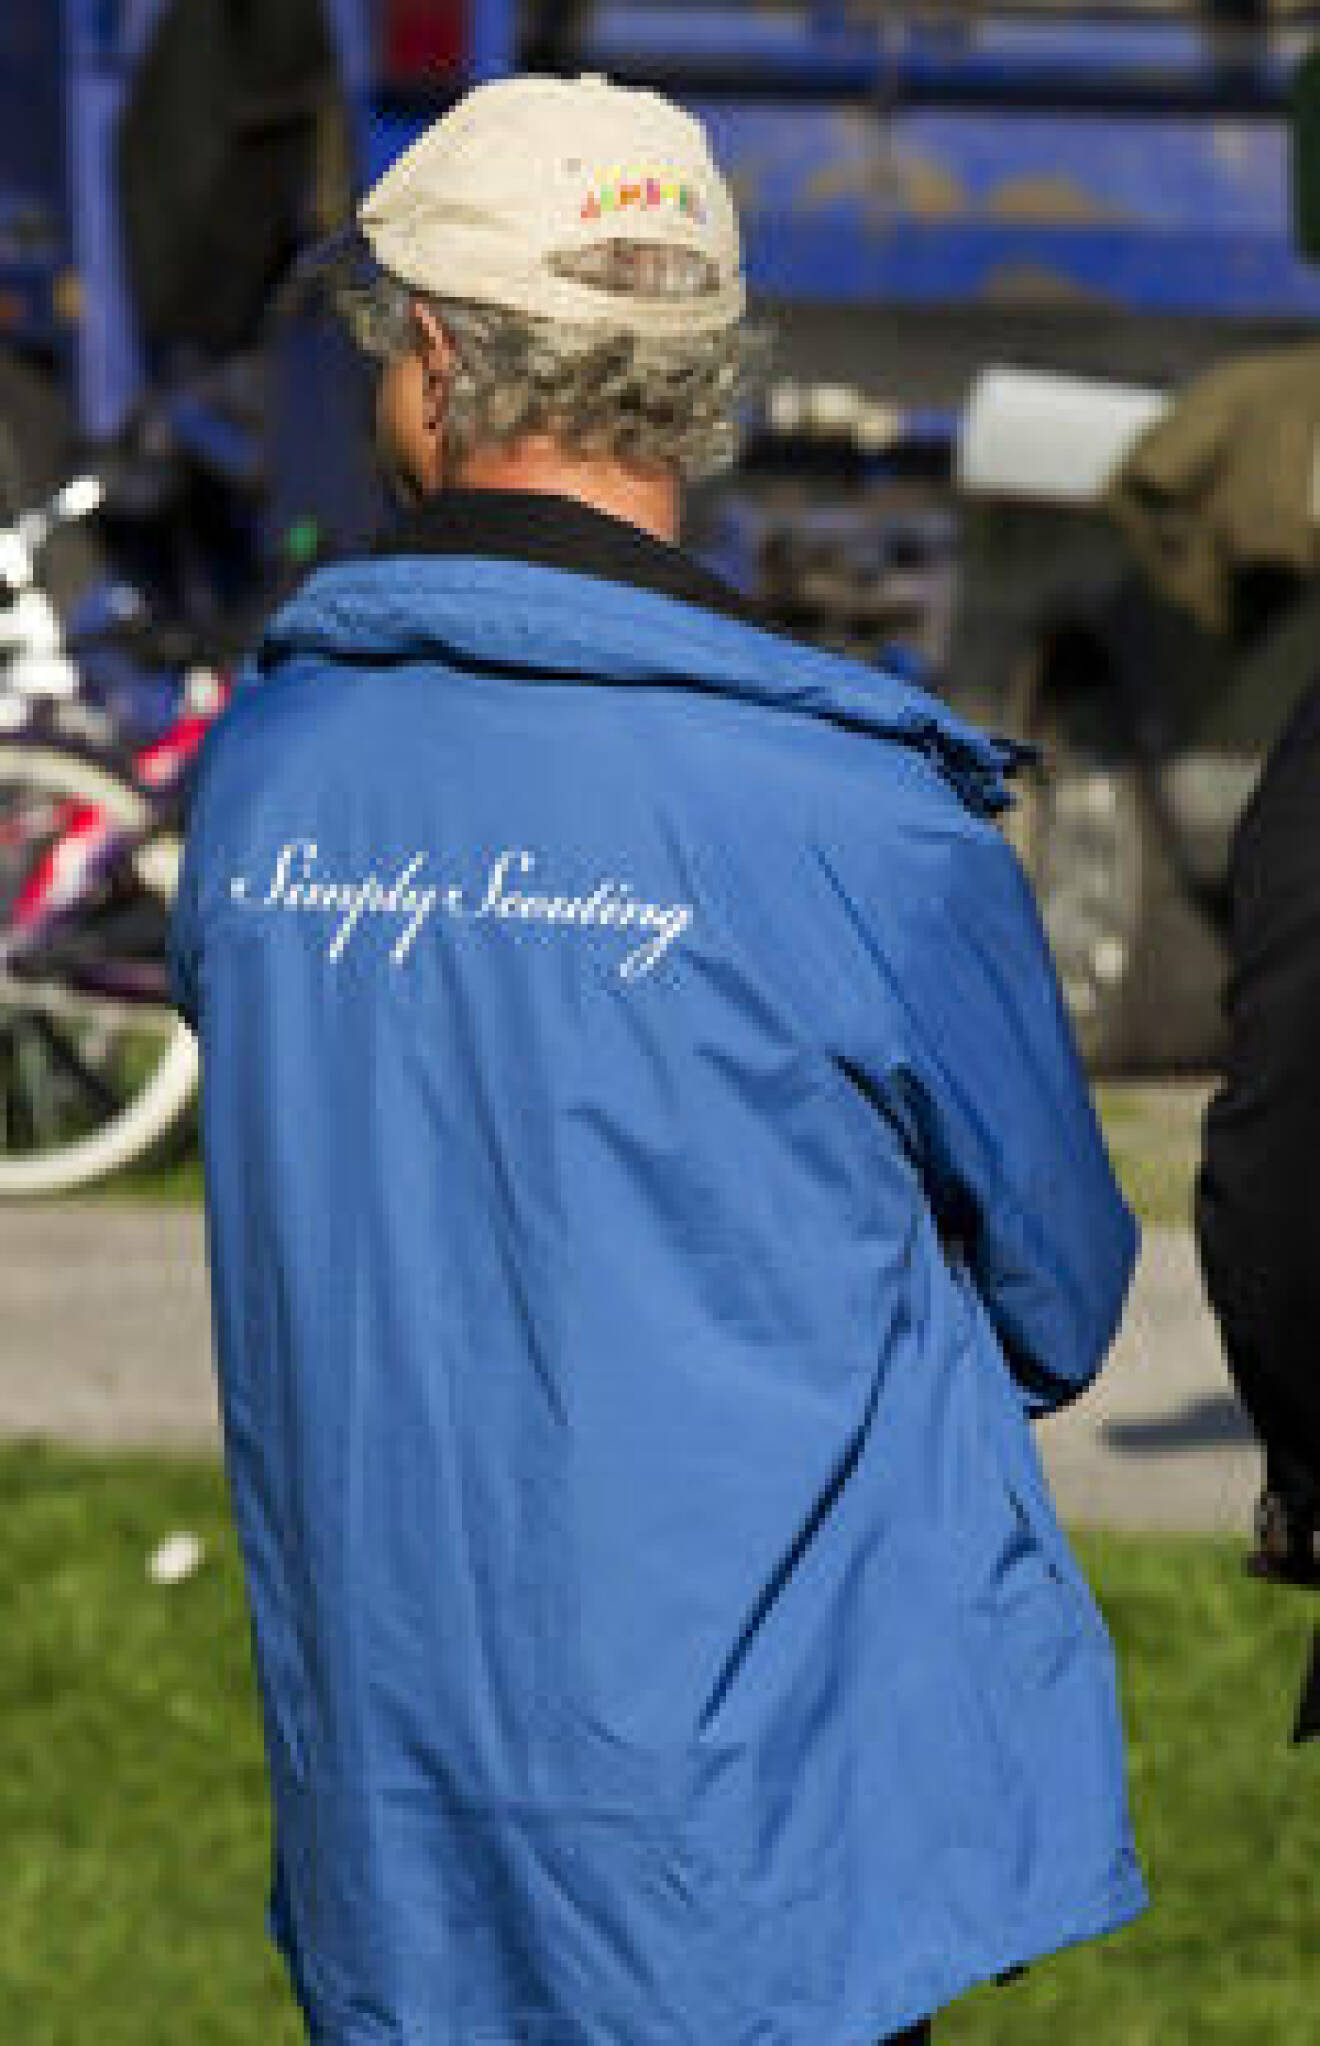 Kungen var sportigt klädd i en jacka med texten "Simply scouting".